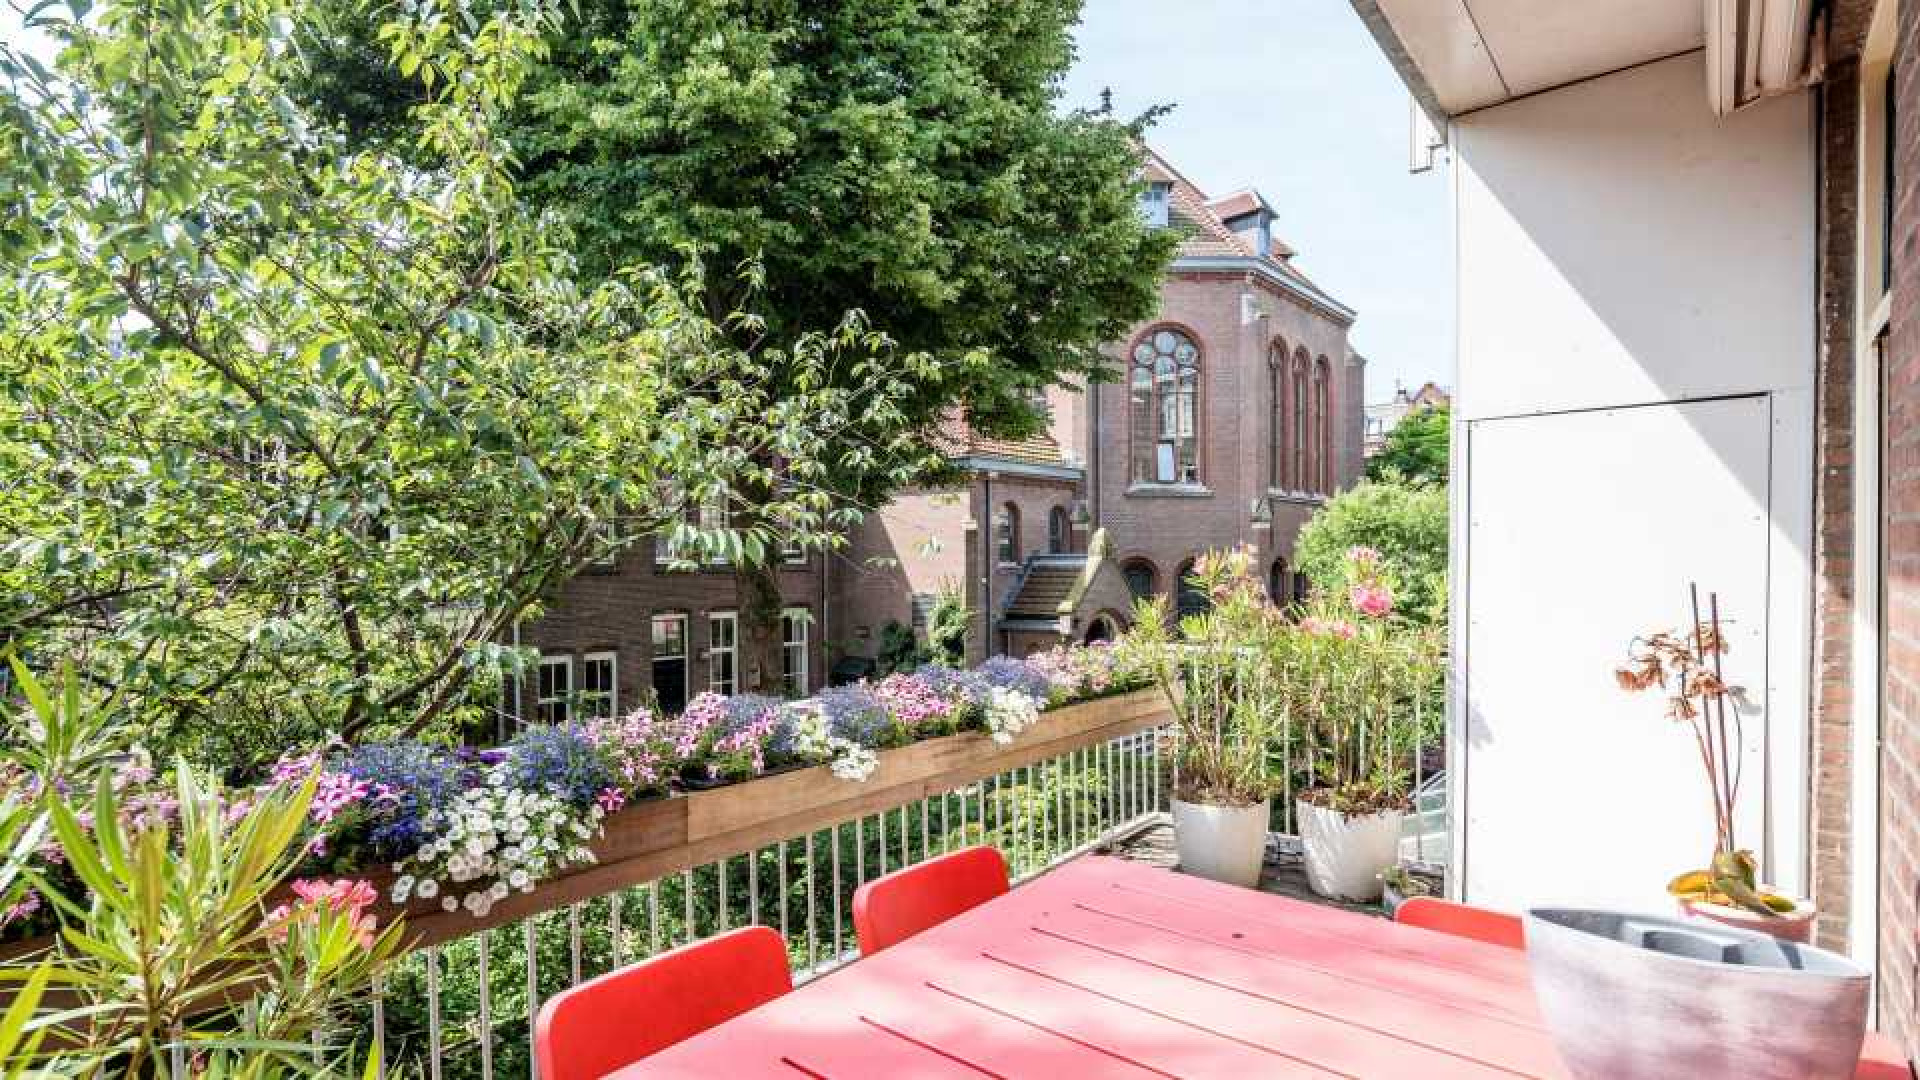 Trendwatcher Adjiedj Bakas zet zijn bijzondere miljoenenpand in Amsterdam te koop. Zie foto's